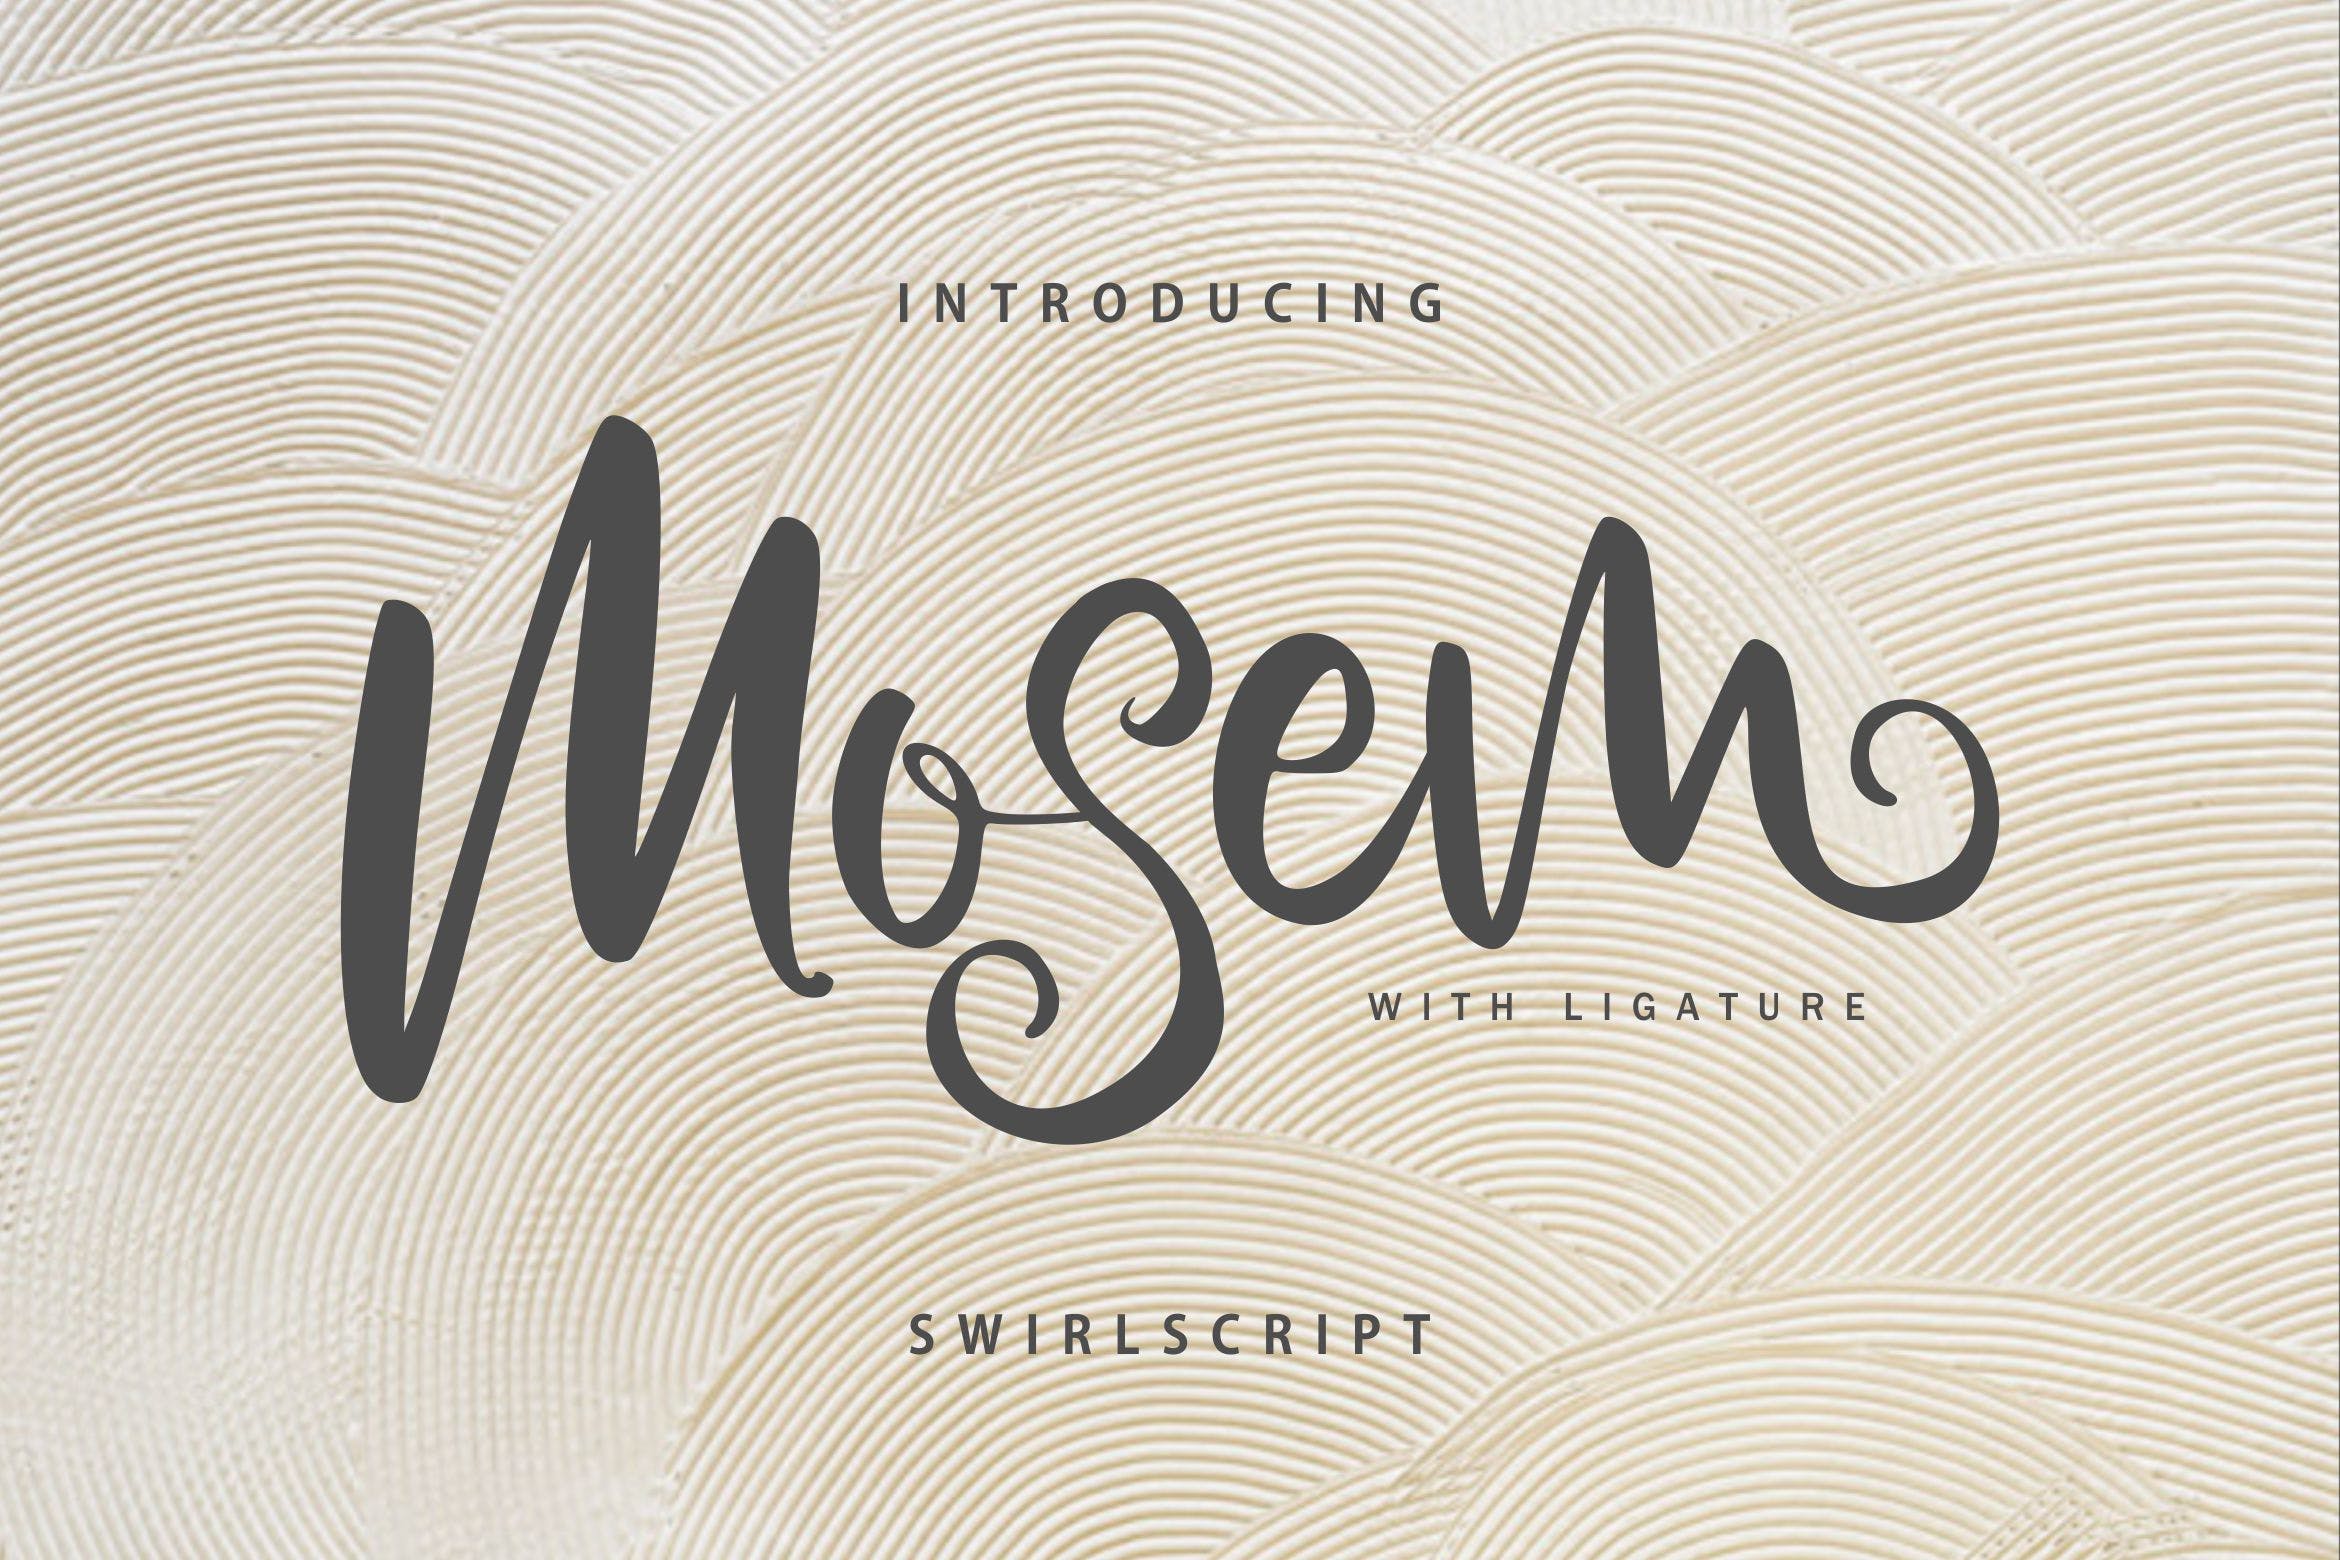 漩涡风格英文书法字体素材库精选 Mosem | Swirl Script Font插图